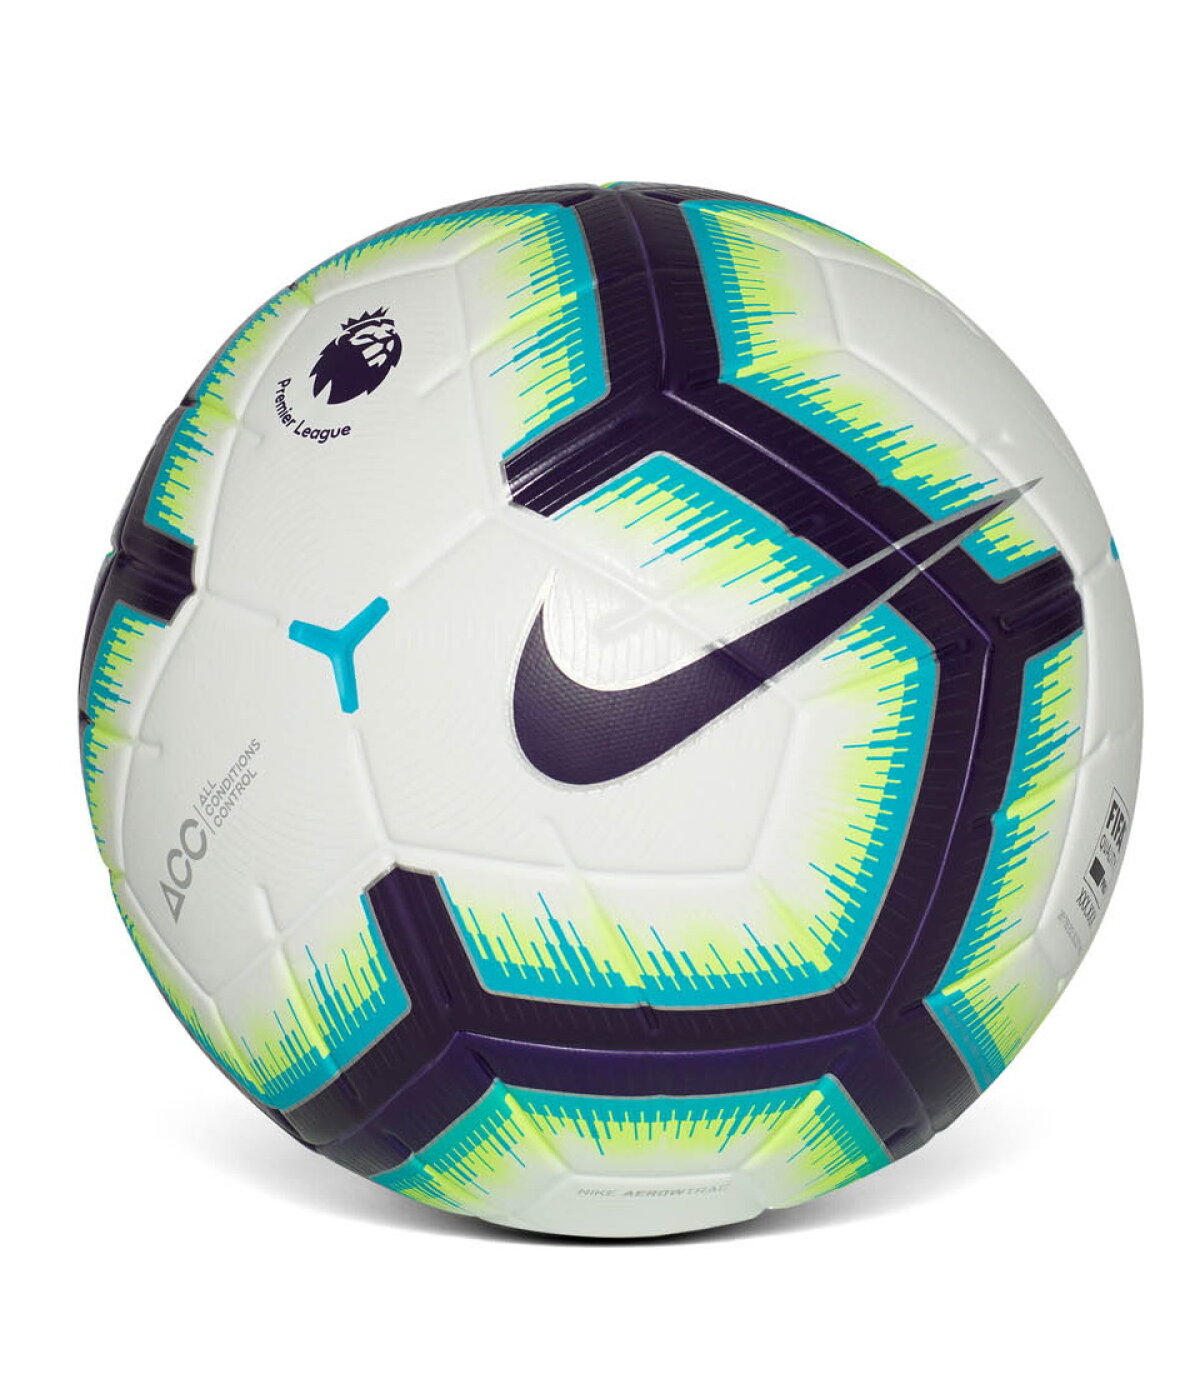 Mingea vrăjitorului Merlin în Derby » FCSB - Dinamo se va disputa cu un balon special, realizat pentru Liga 1 de către Nike!